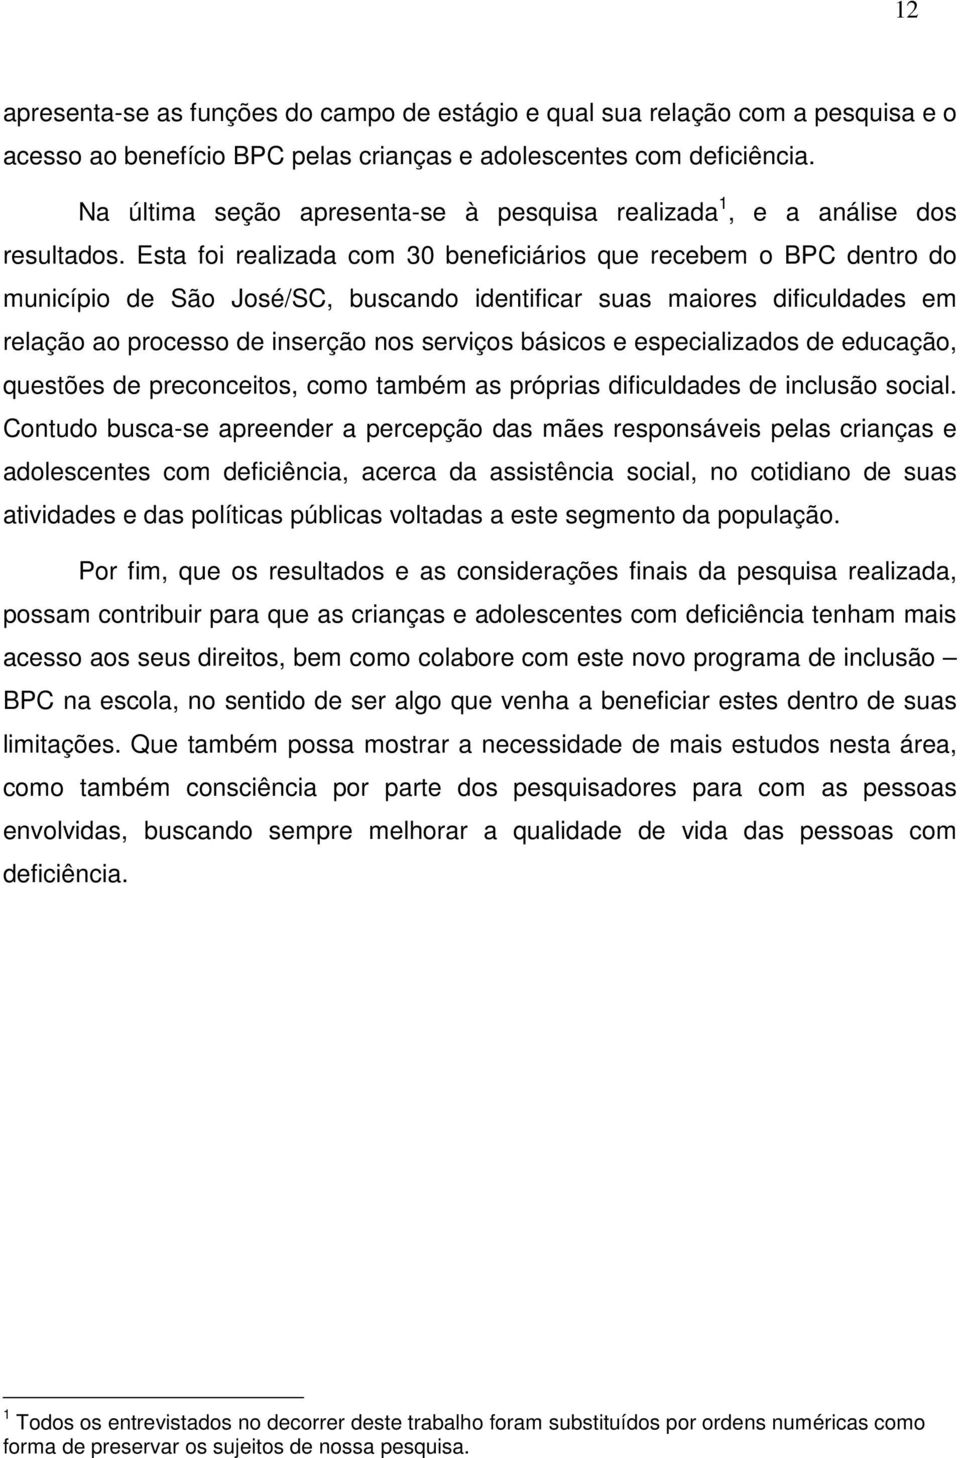 Esta foi realizada com 30 beneficiários que recebem o BPC dentro do município de São José/SC, buscando identificar suas maiores dificuldades em relação ao processo de inserção nos serviços básicos e